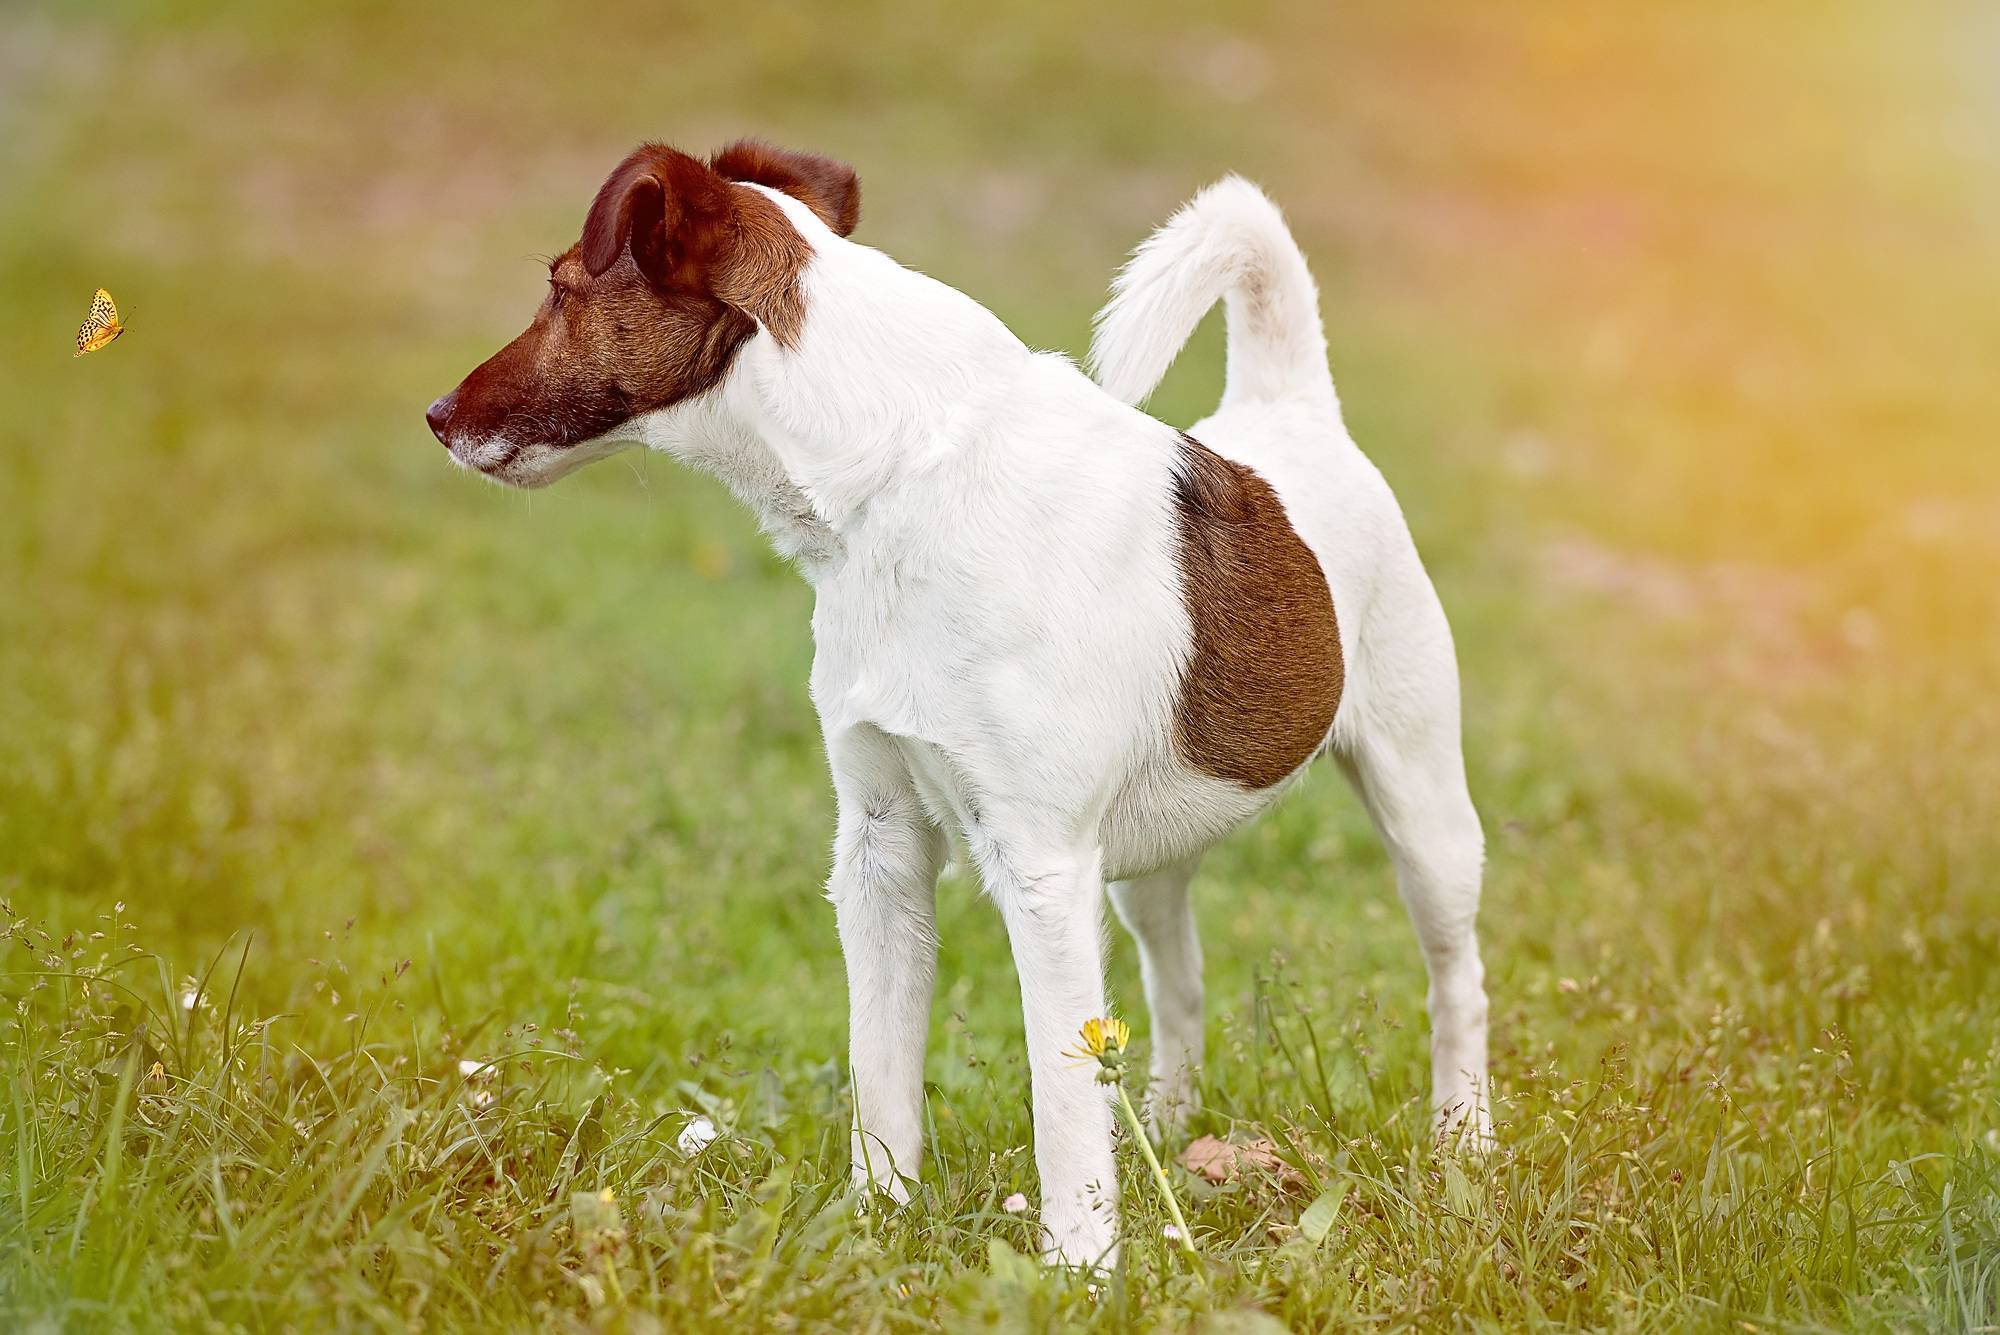 Порода собак парсон рассел терьер — энергичная, выносливая и бесстрашная порода